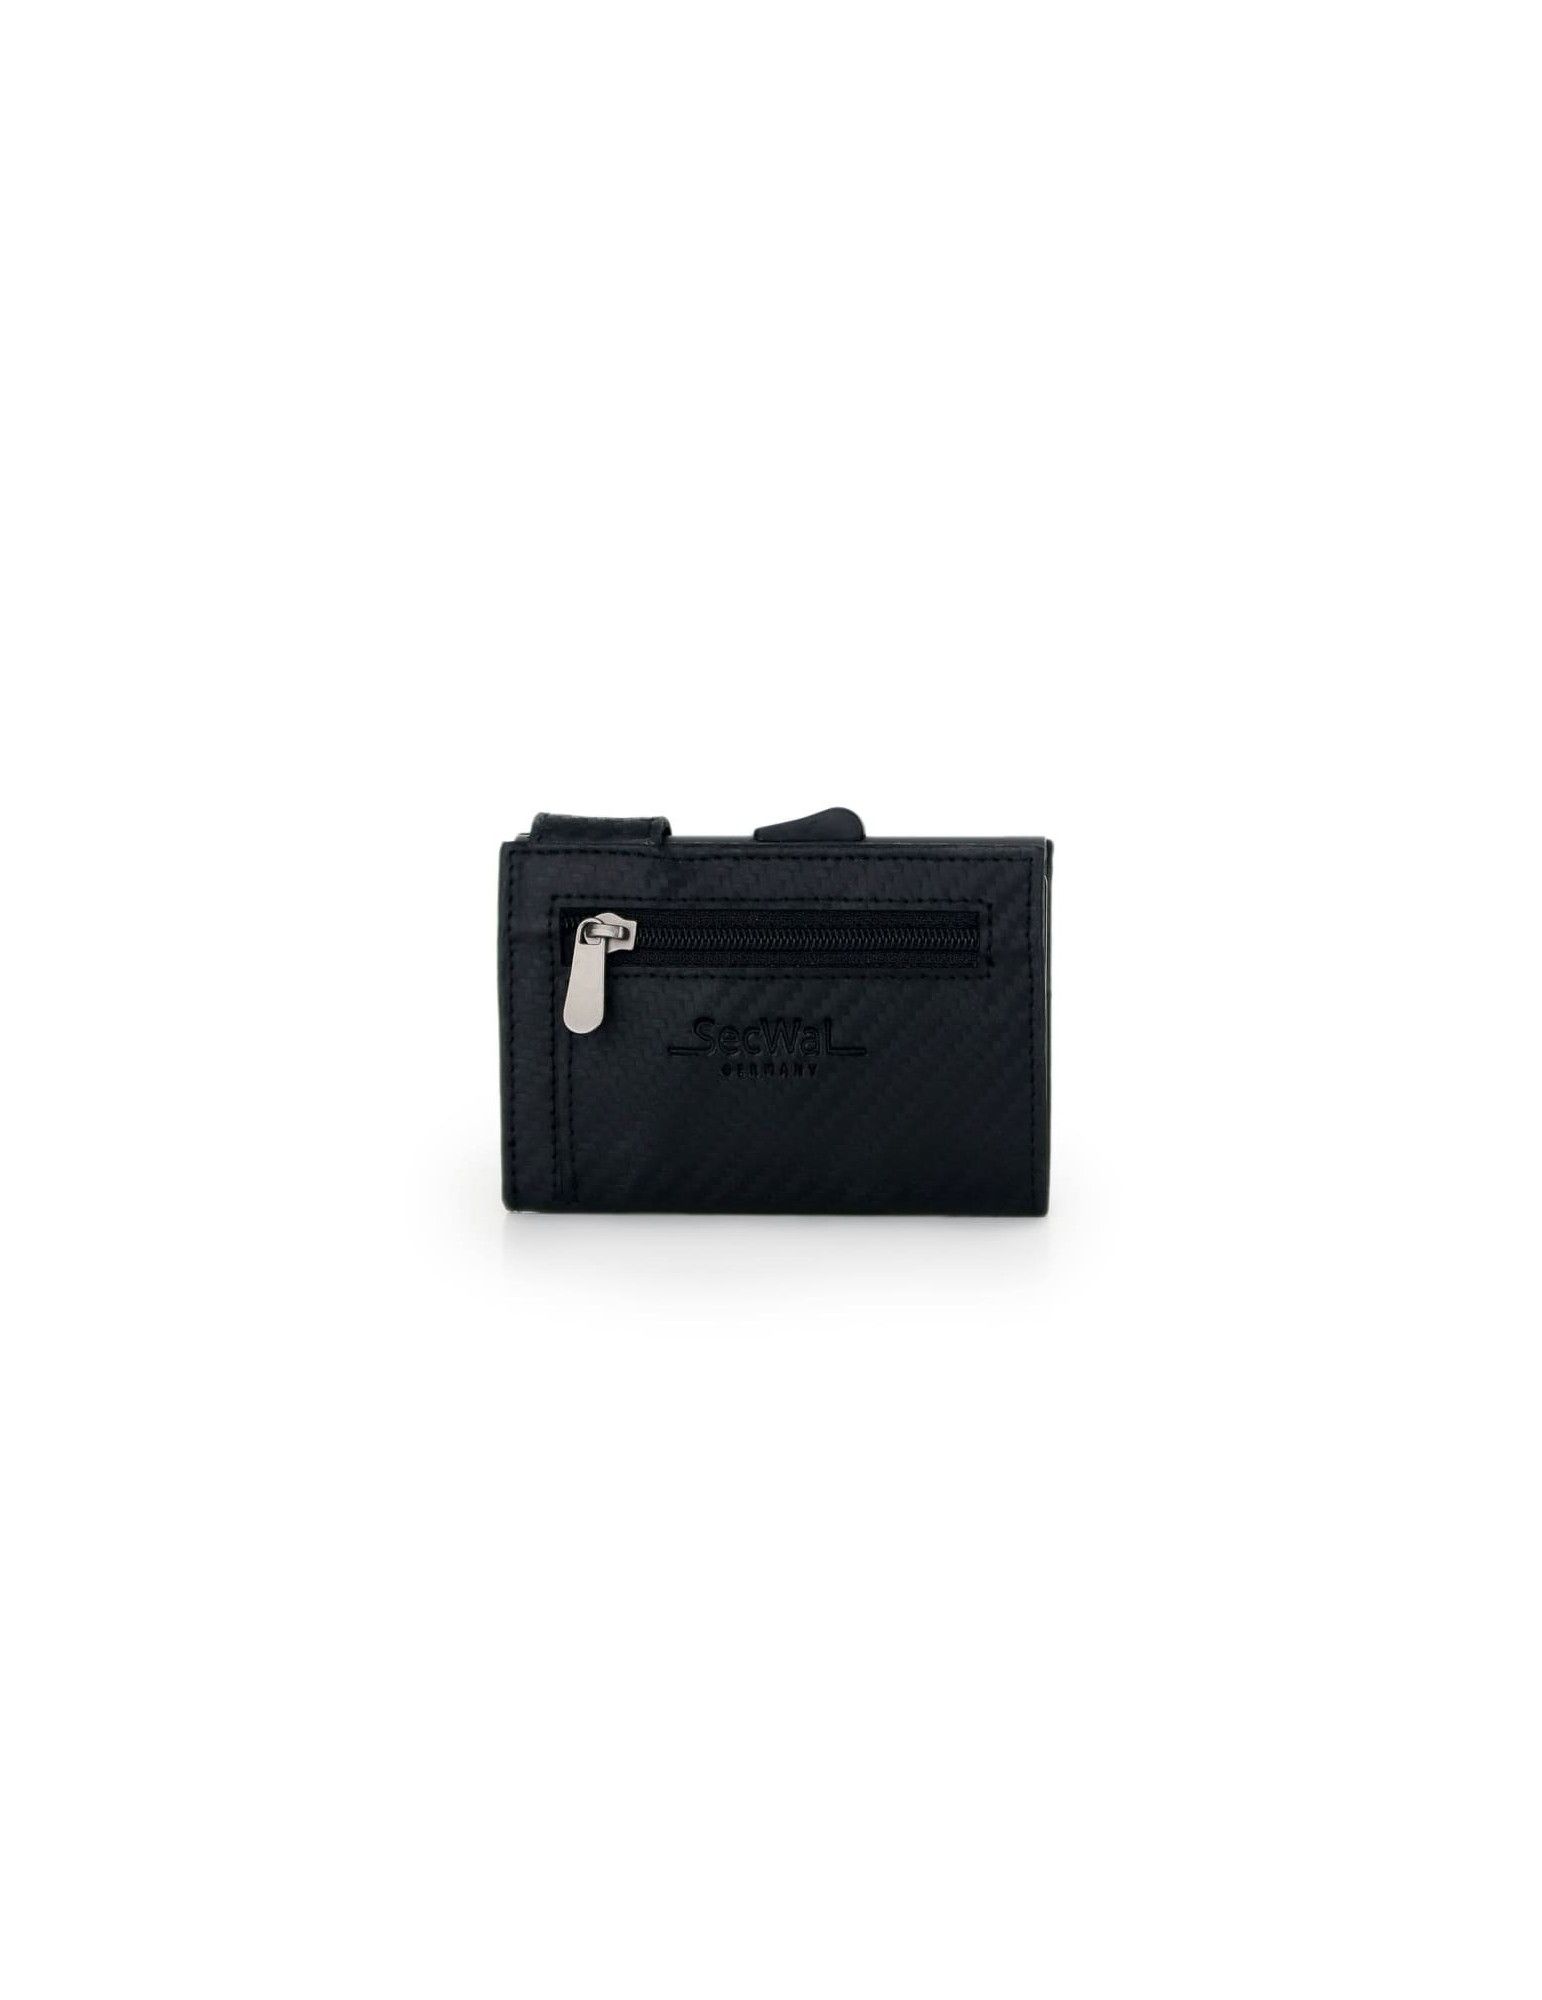 Porte-cartes SecWal RV Leather Carbon noir